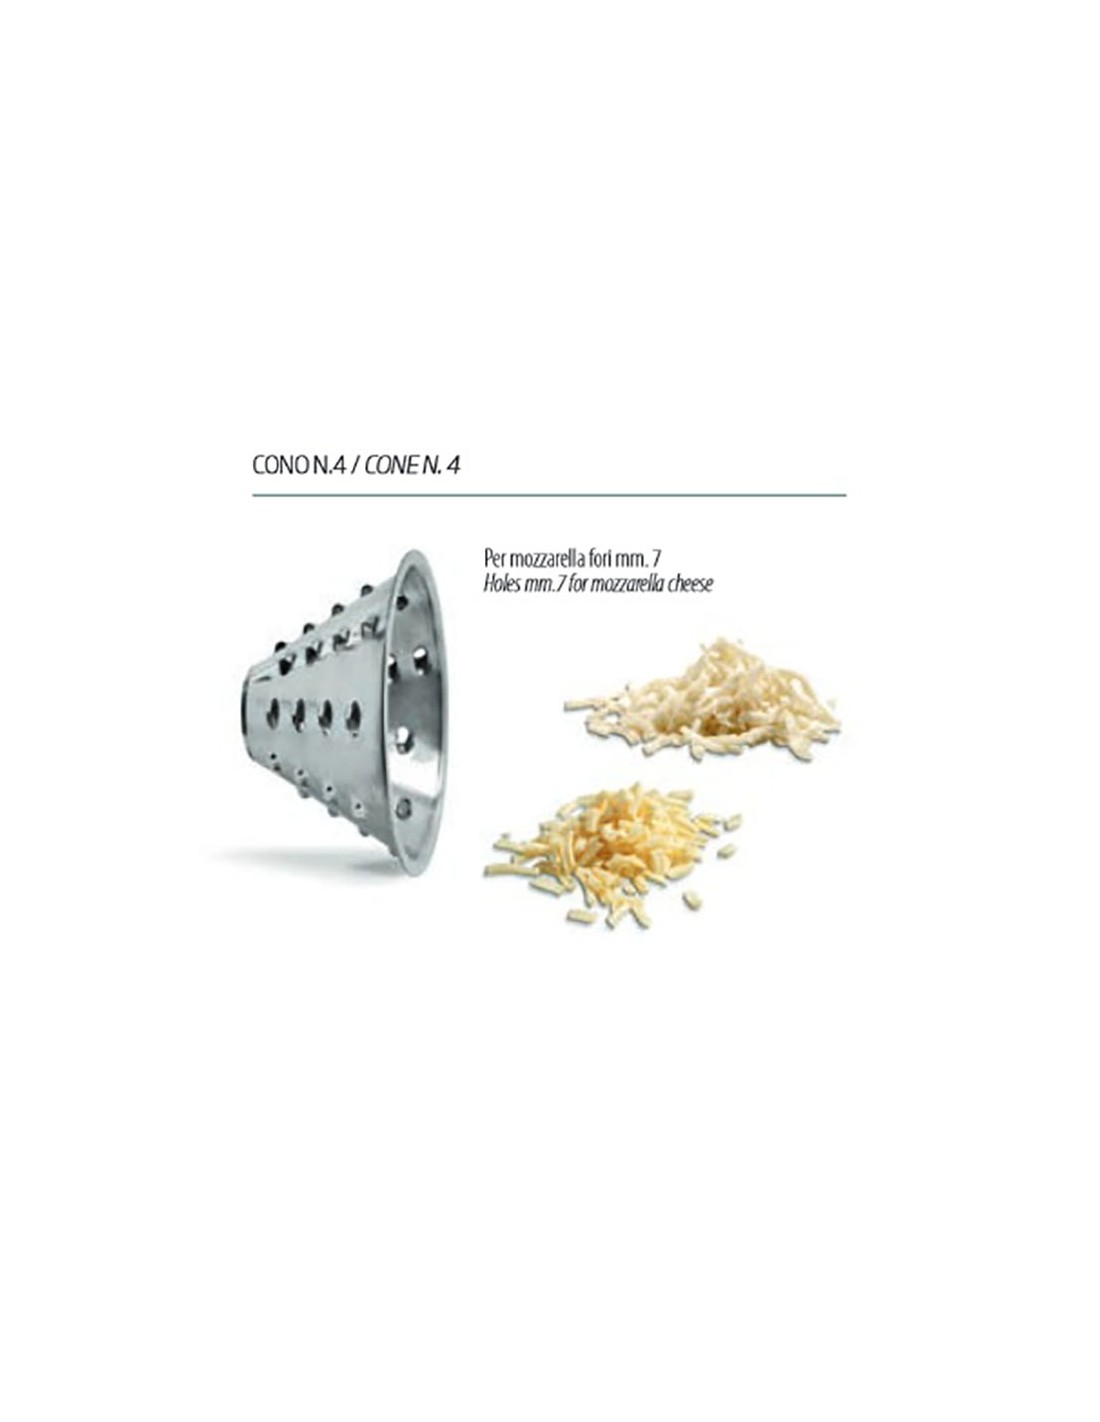 Cone steel mozzarella choppers - Hole 7 mm - For shredding mozzarella